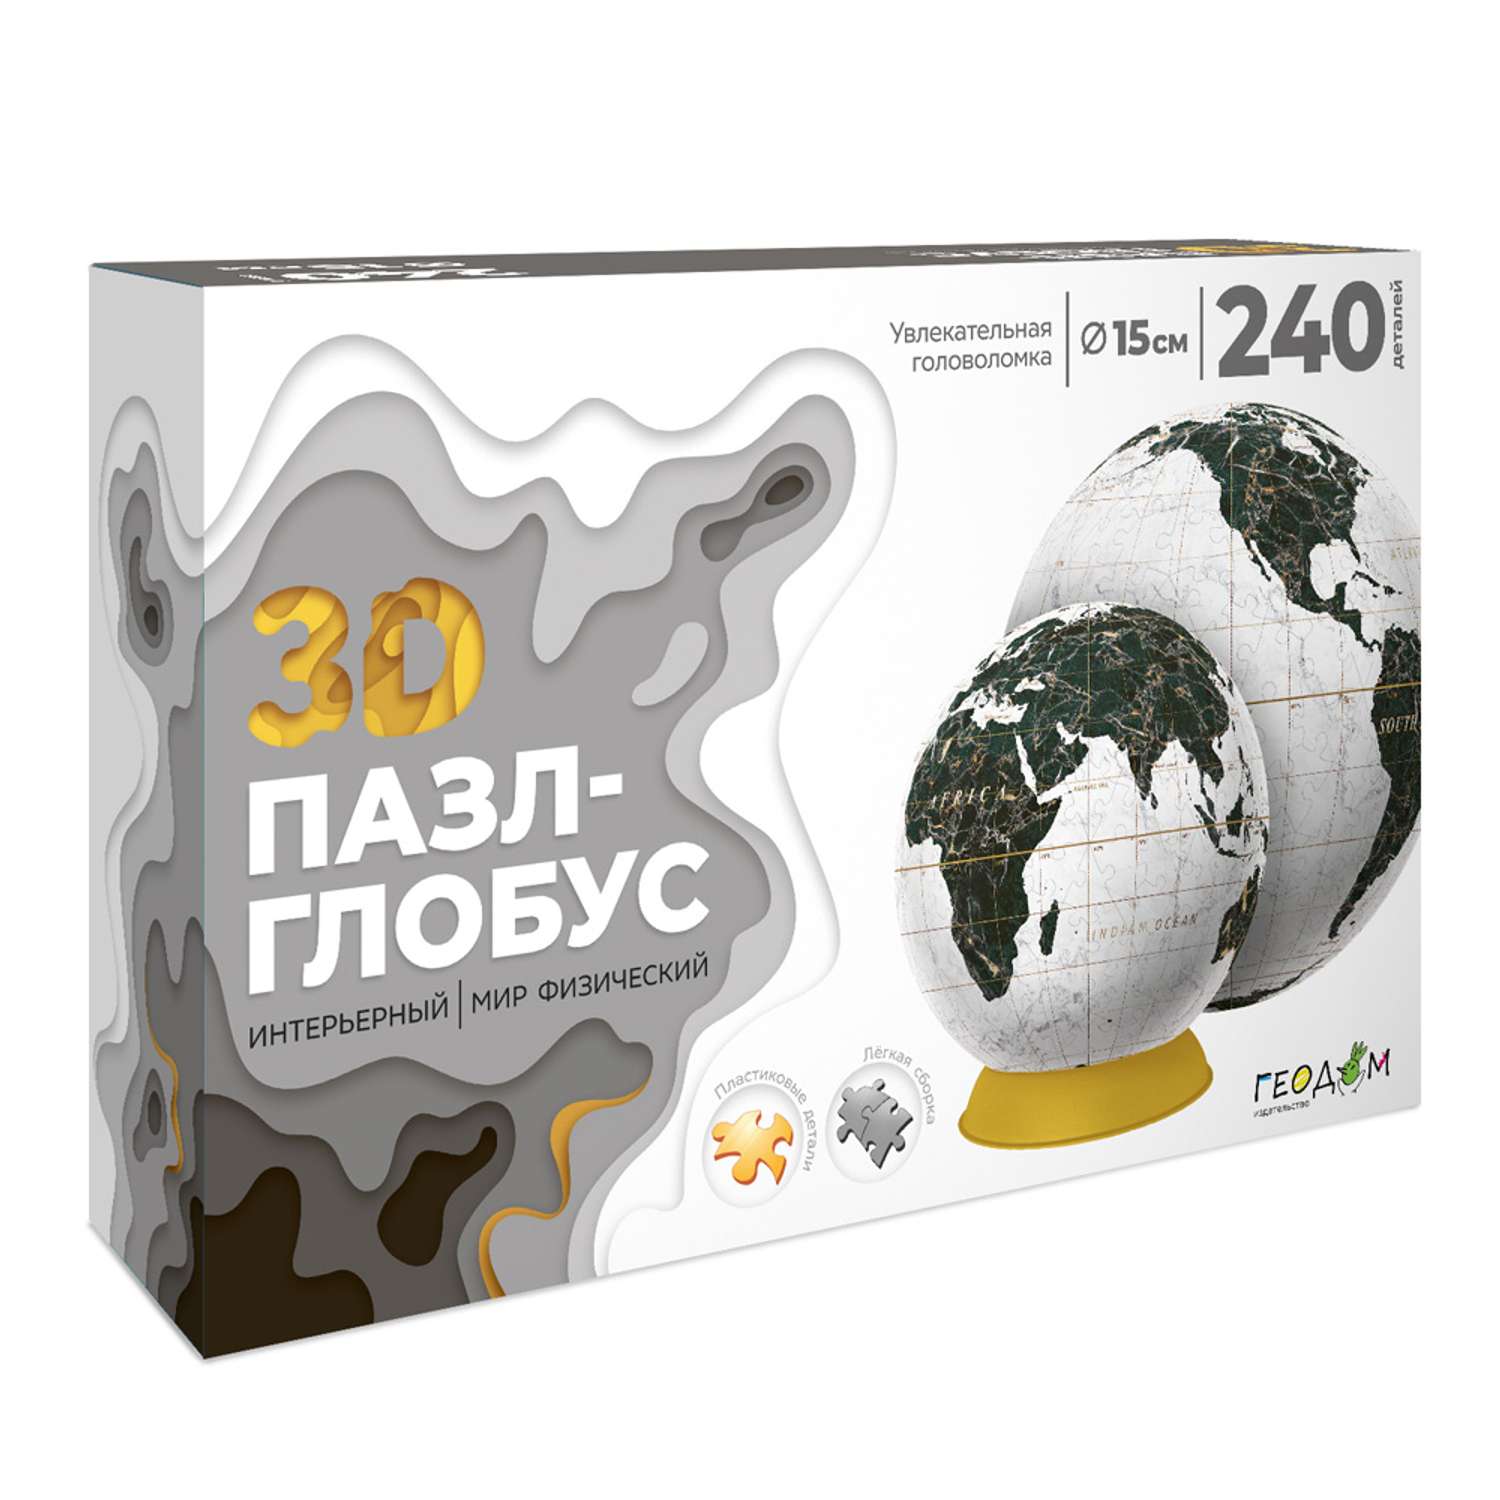 3D пазл-глобус ГЕОДОМ Мир физический. Интерьерный белый. 240 деталей - фото 1